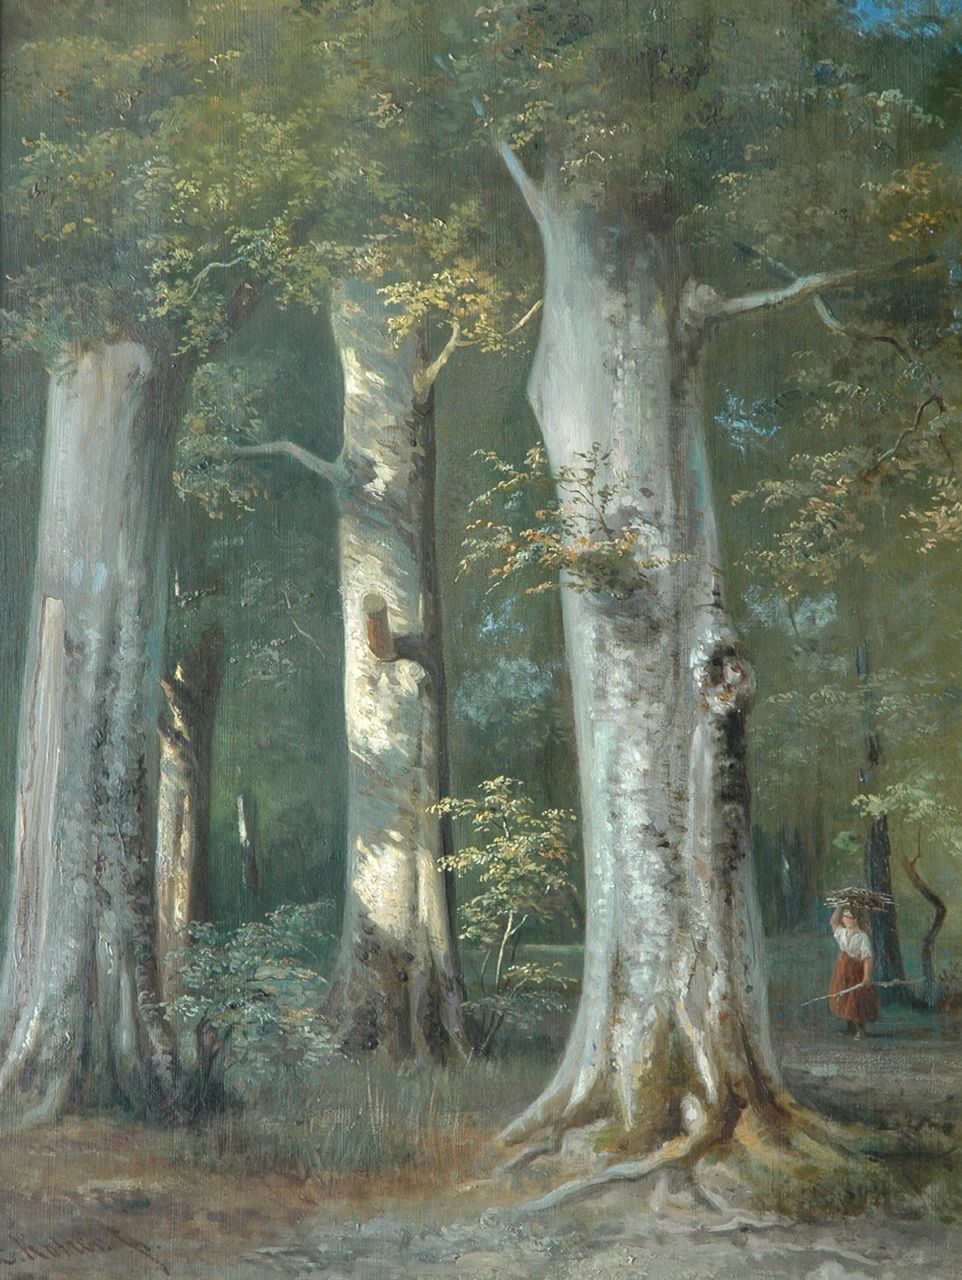 Koster E.  | Everhardus Koster, Het landmeisje in het bos (verloren gegaan bij brand in Armando Museum, 22.10.2007), olieverf op doek 67,4 x 53,0 cm, gesigneerd linksonder